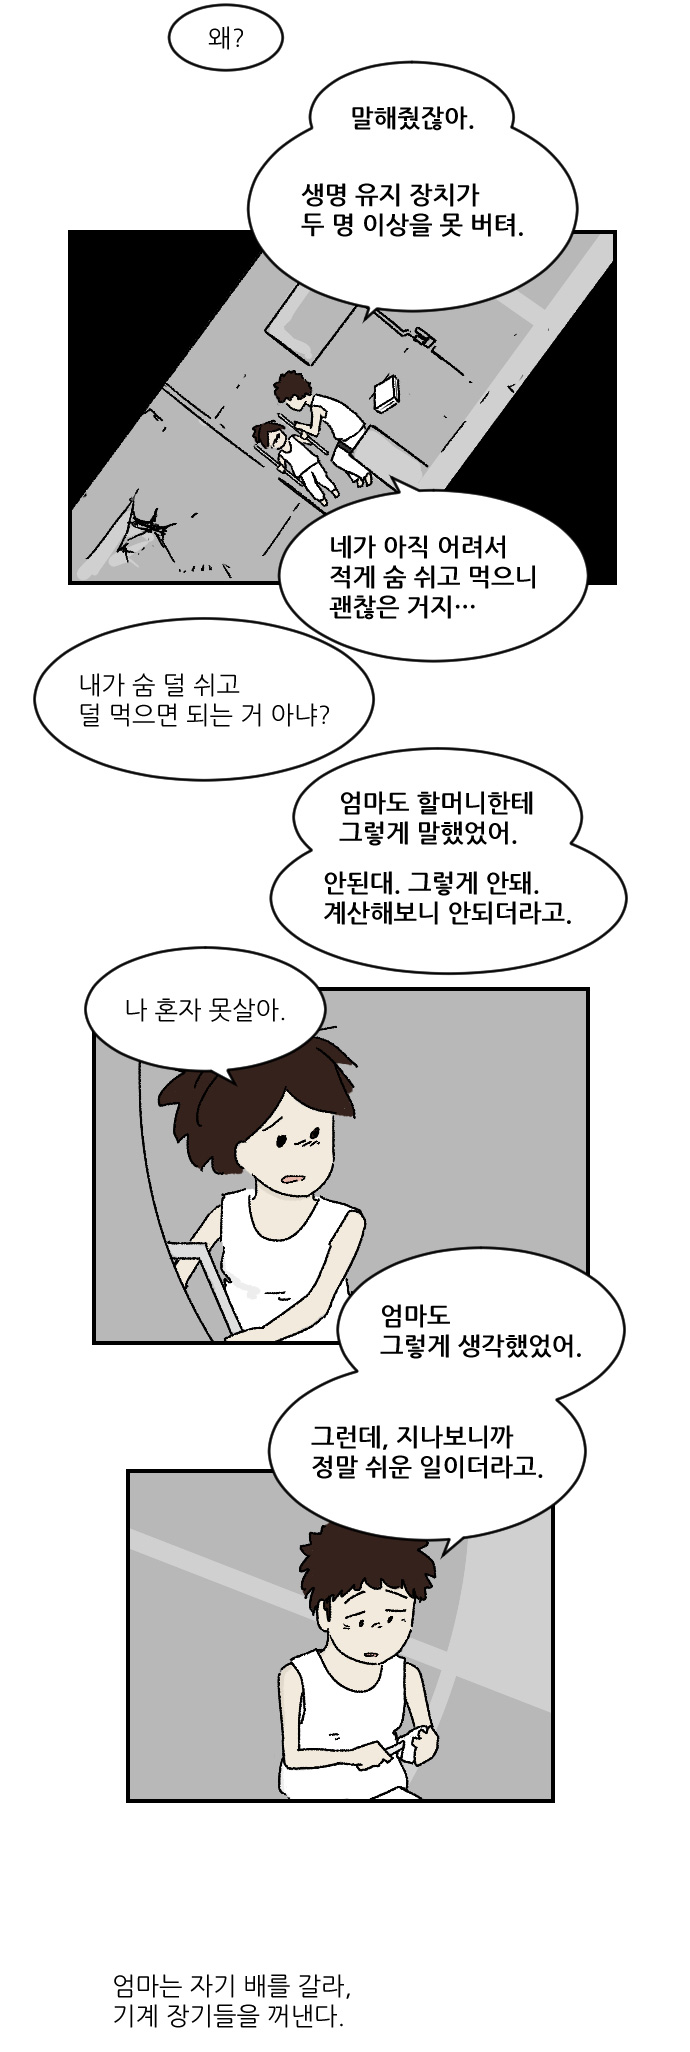 [만화] 엄마는 오늘 죽는다 - 꾸르